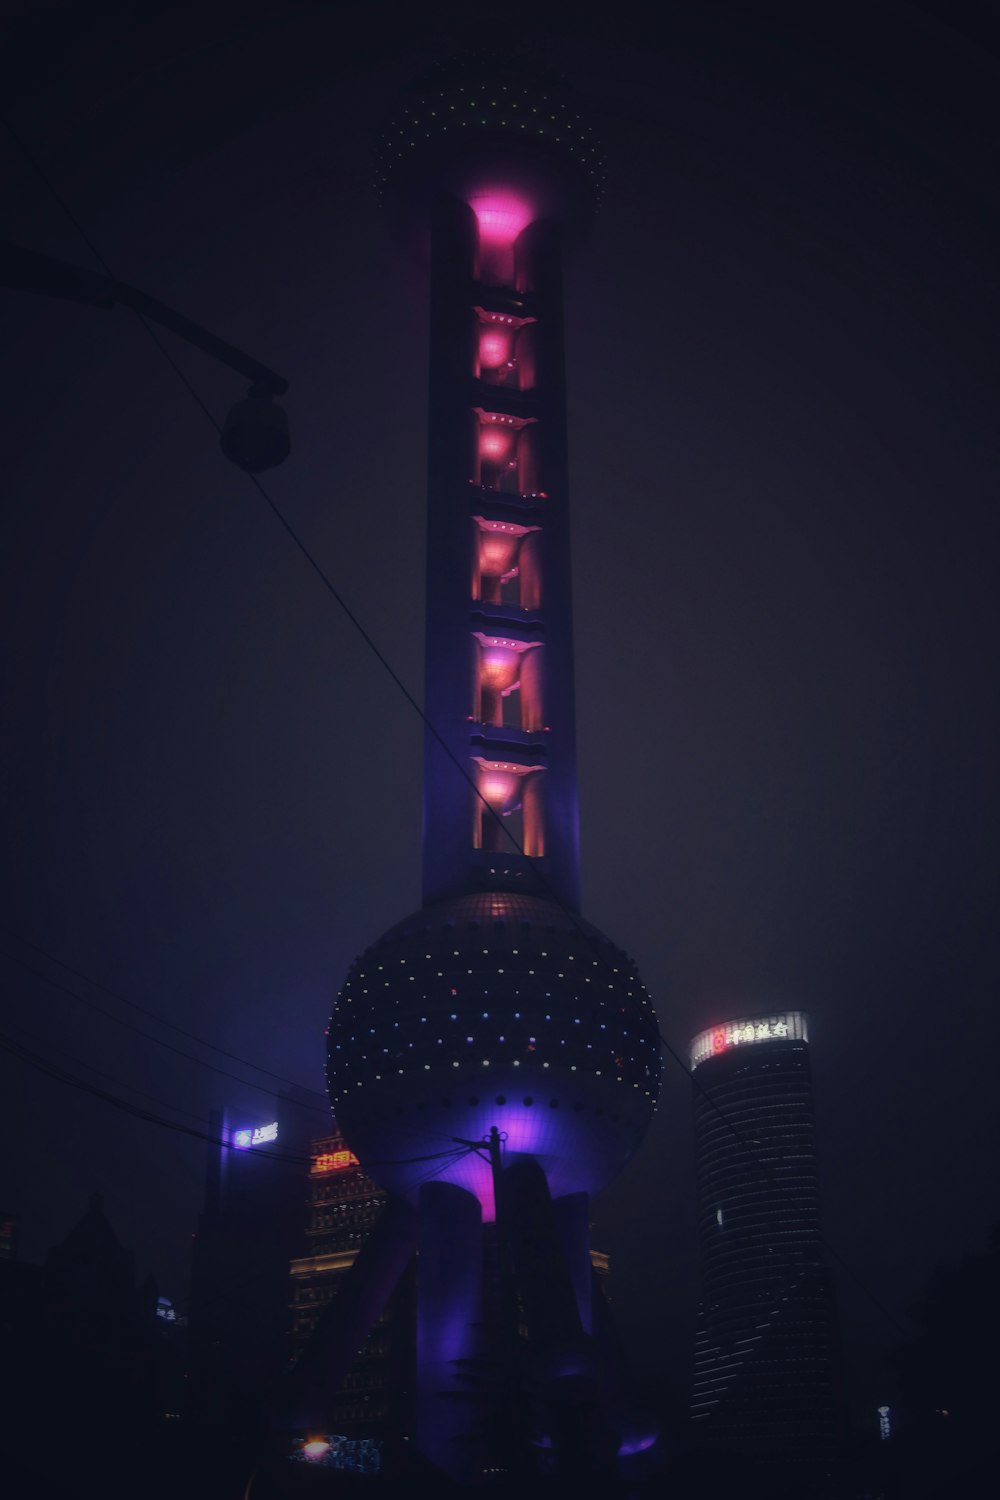 Torre púrpura y negra durante la noche